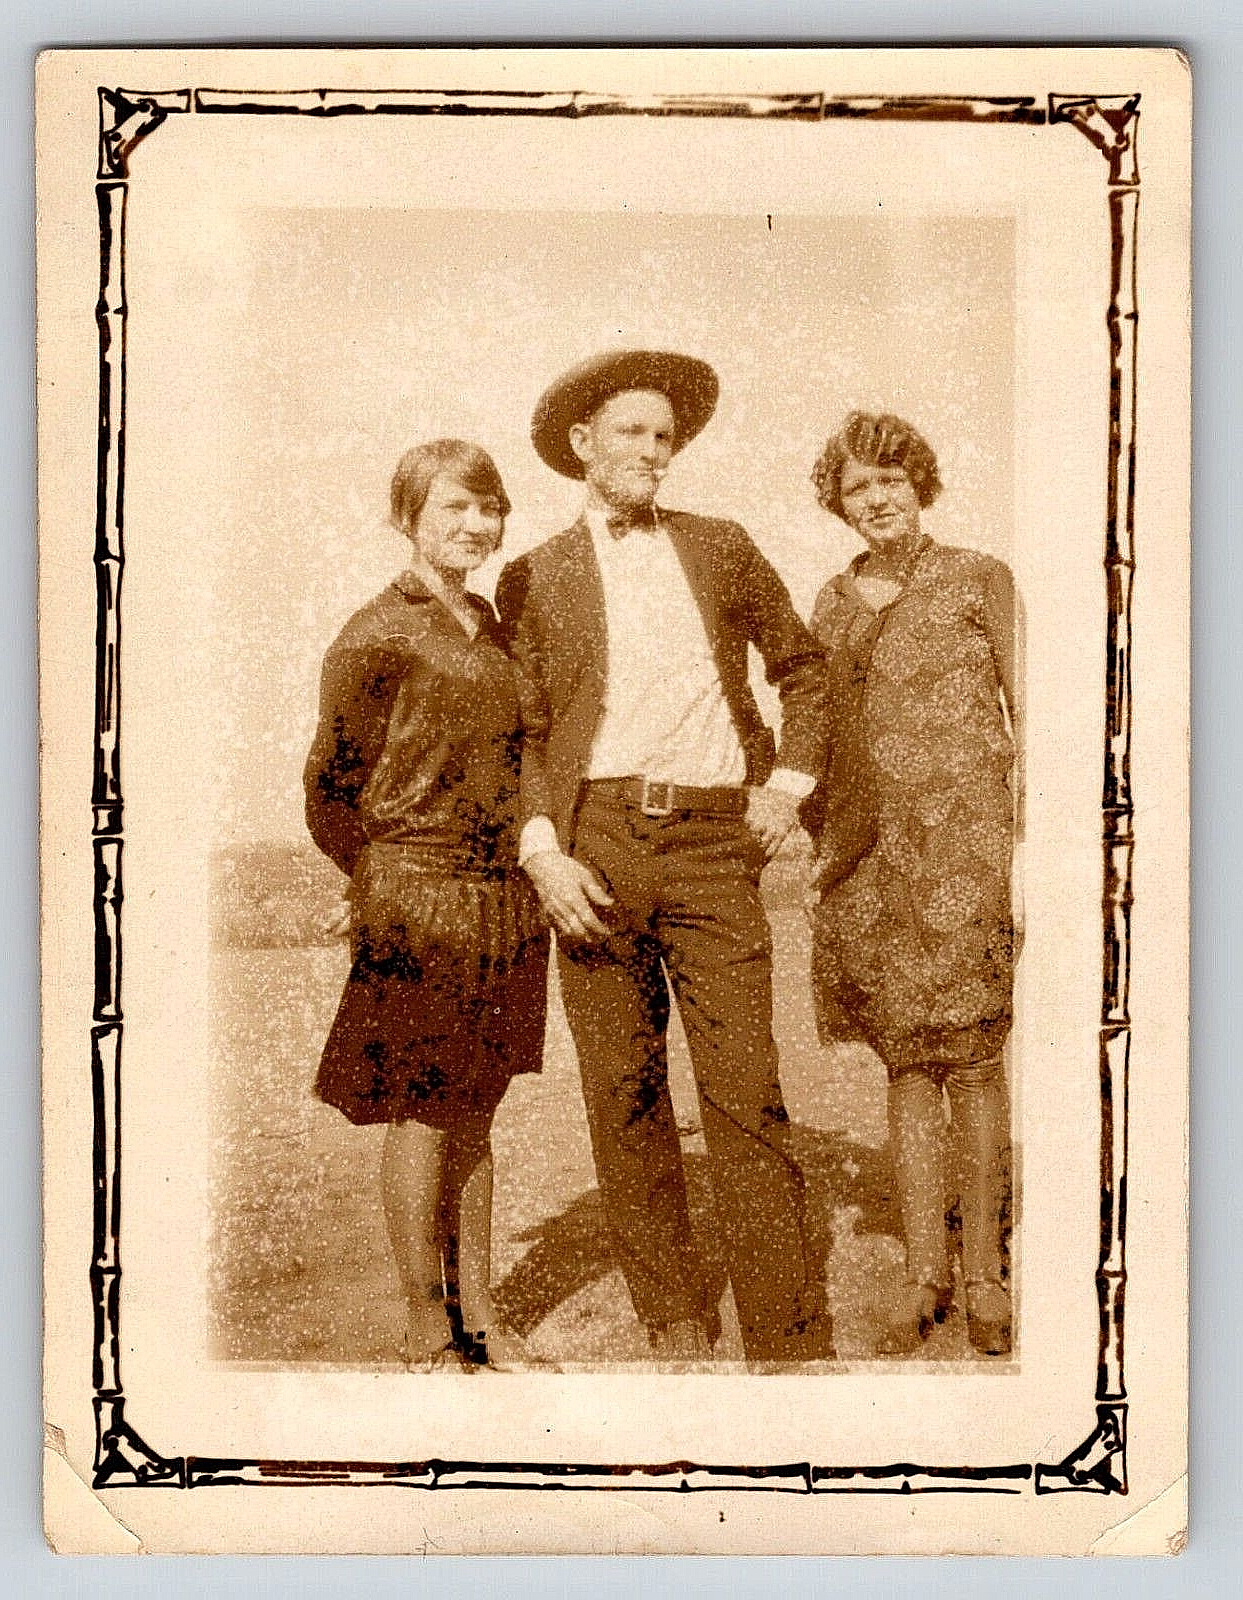 Cowboy And Two Women Portrait, Sepia, Antique, Vintage Photograph, OOAK